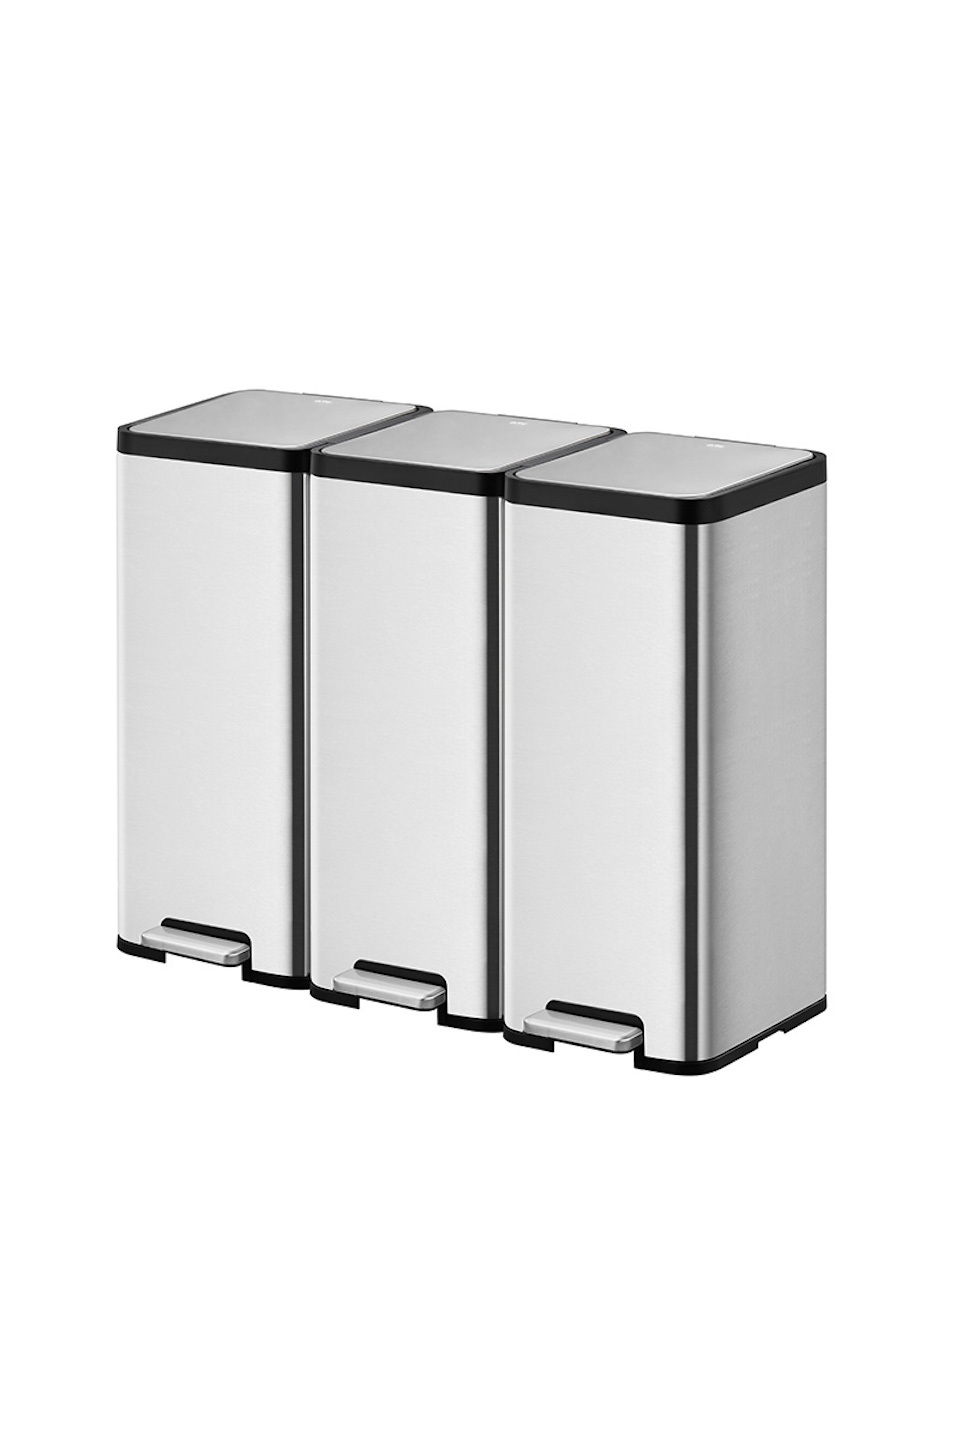 Kompakter und funktionaler Treteimer aus mattgrauem Edelstahl | 30 Liter, HxBxT 66,5x32,1x37,3cm | Silber